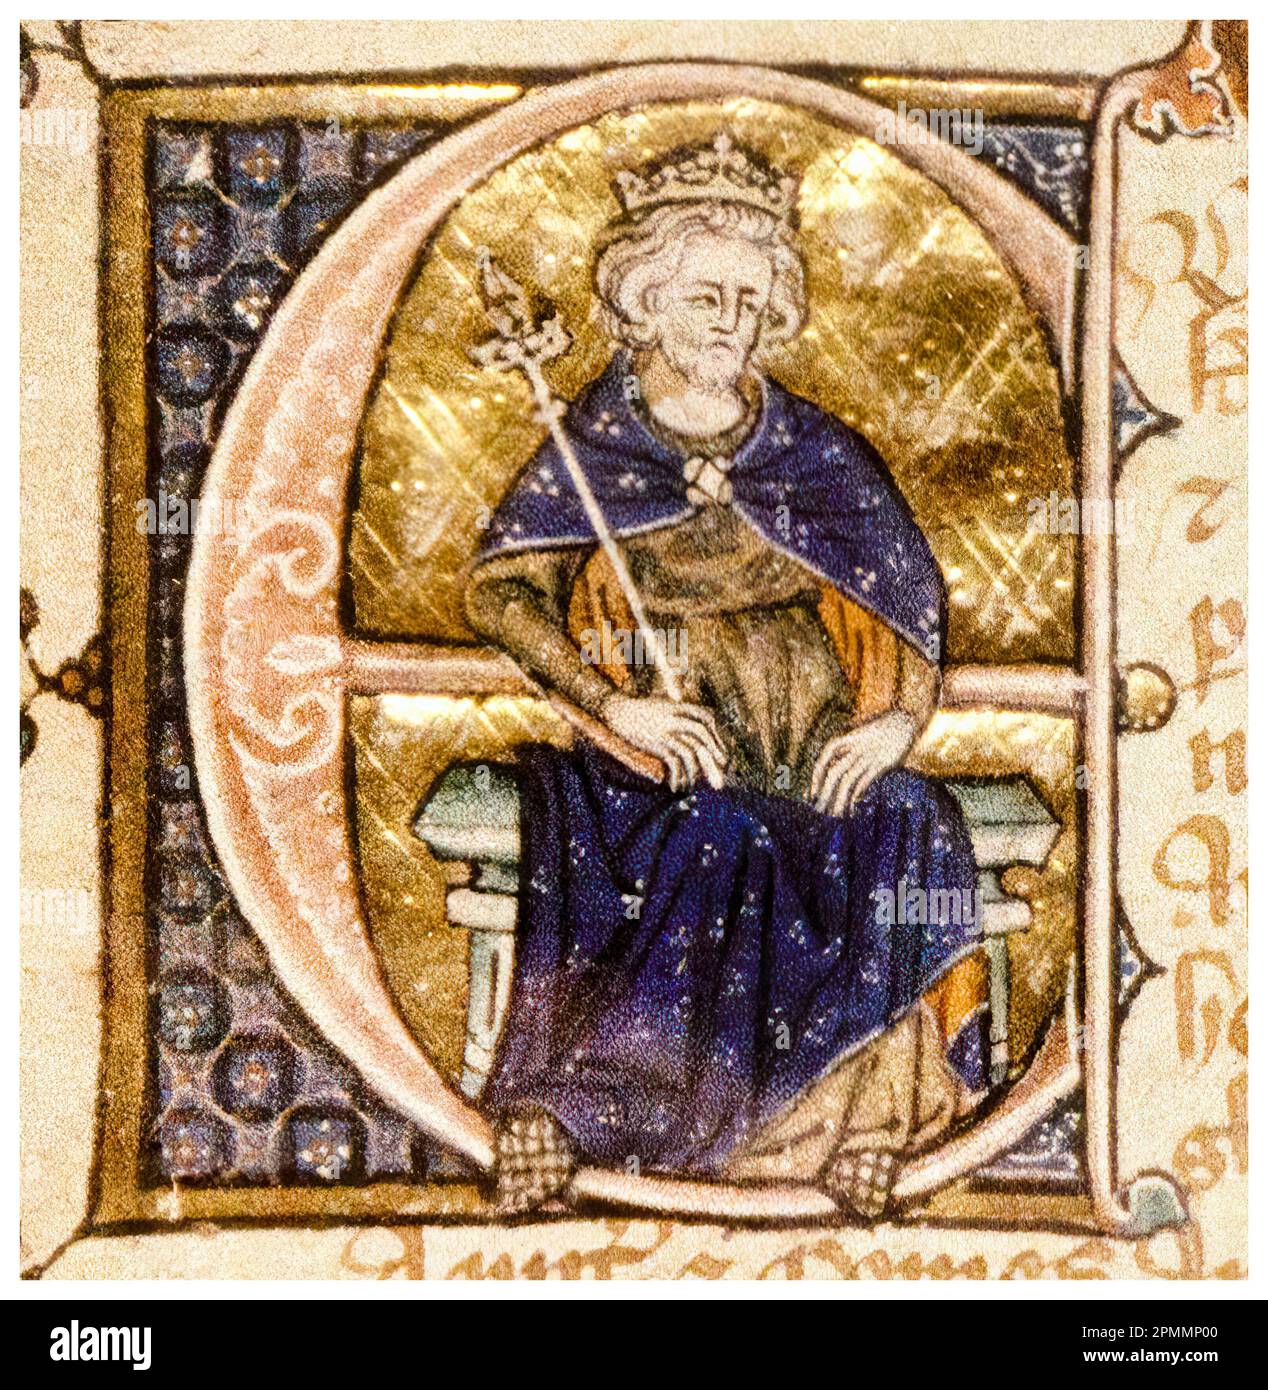 Edward II. Von England (1284-1327), auch Edward von Caernarfon genannt, König von England (1307-1327), beleuchtetes Manuskript Porträtgemälde, ca. 1320 Stockfoto